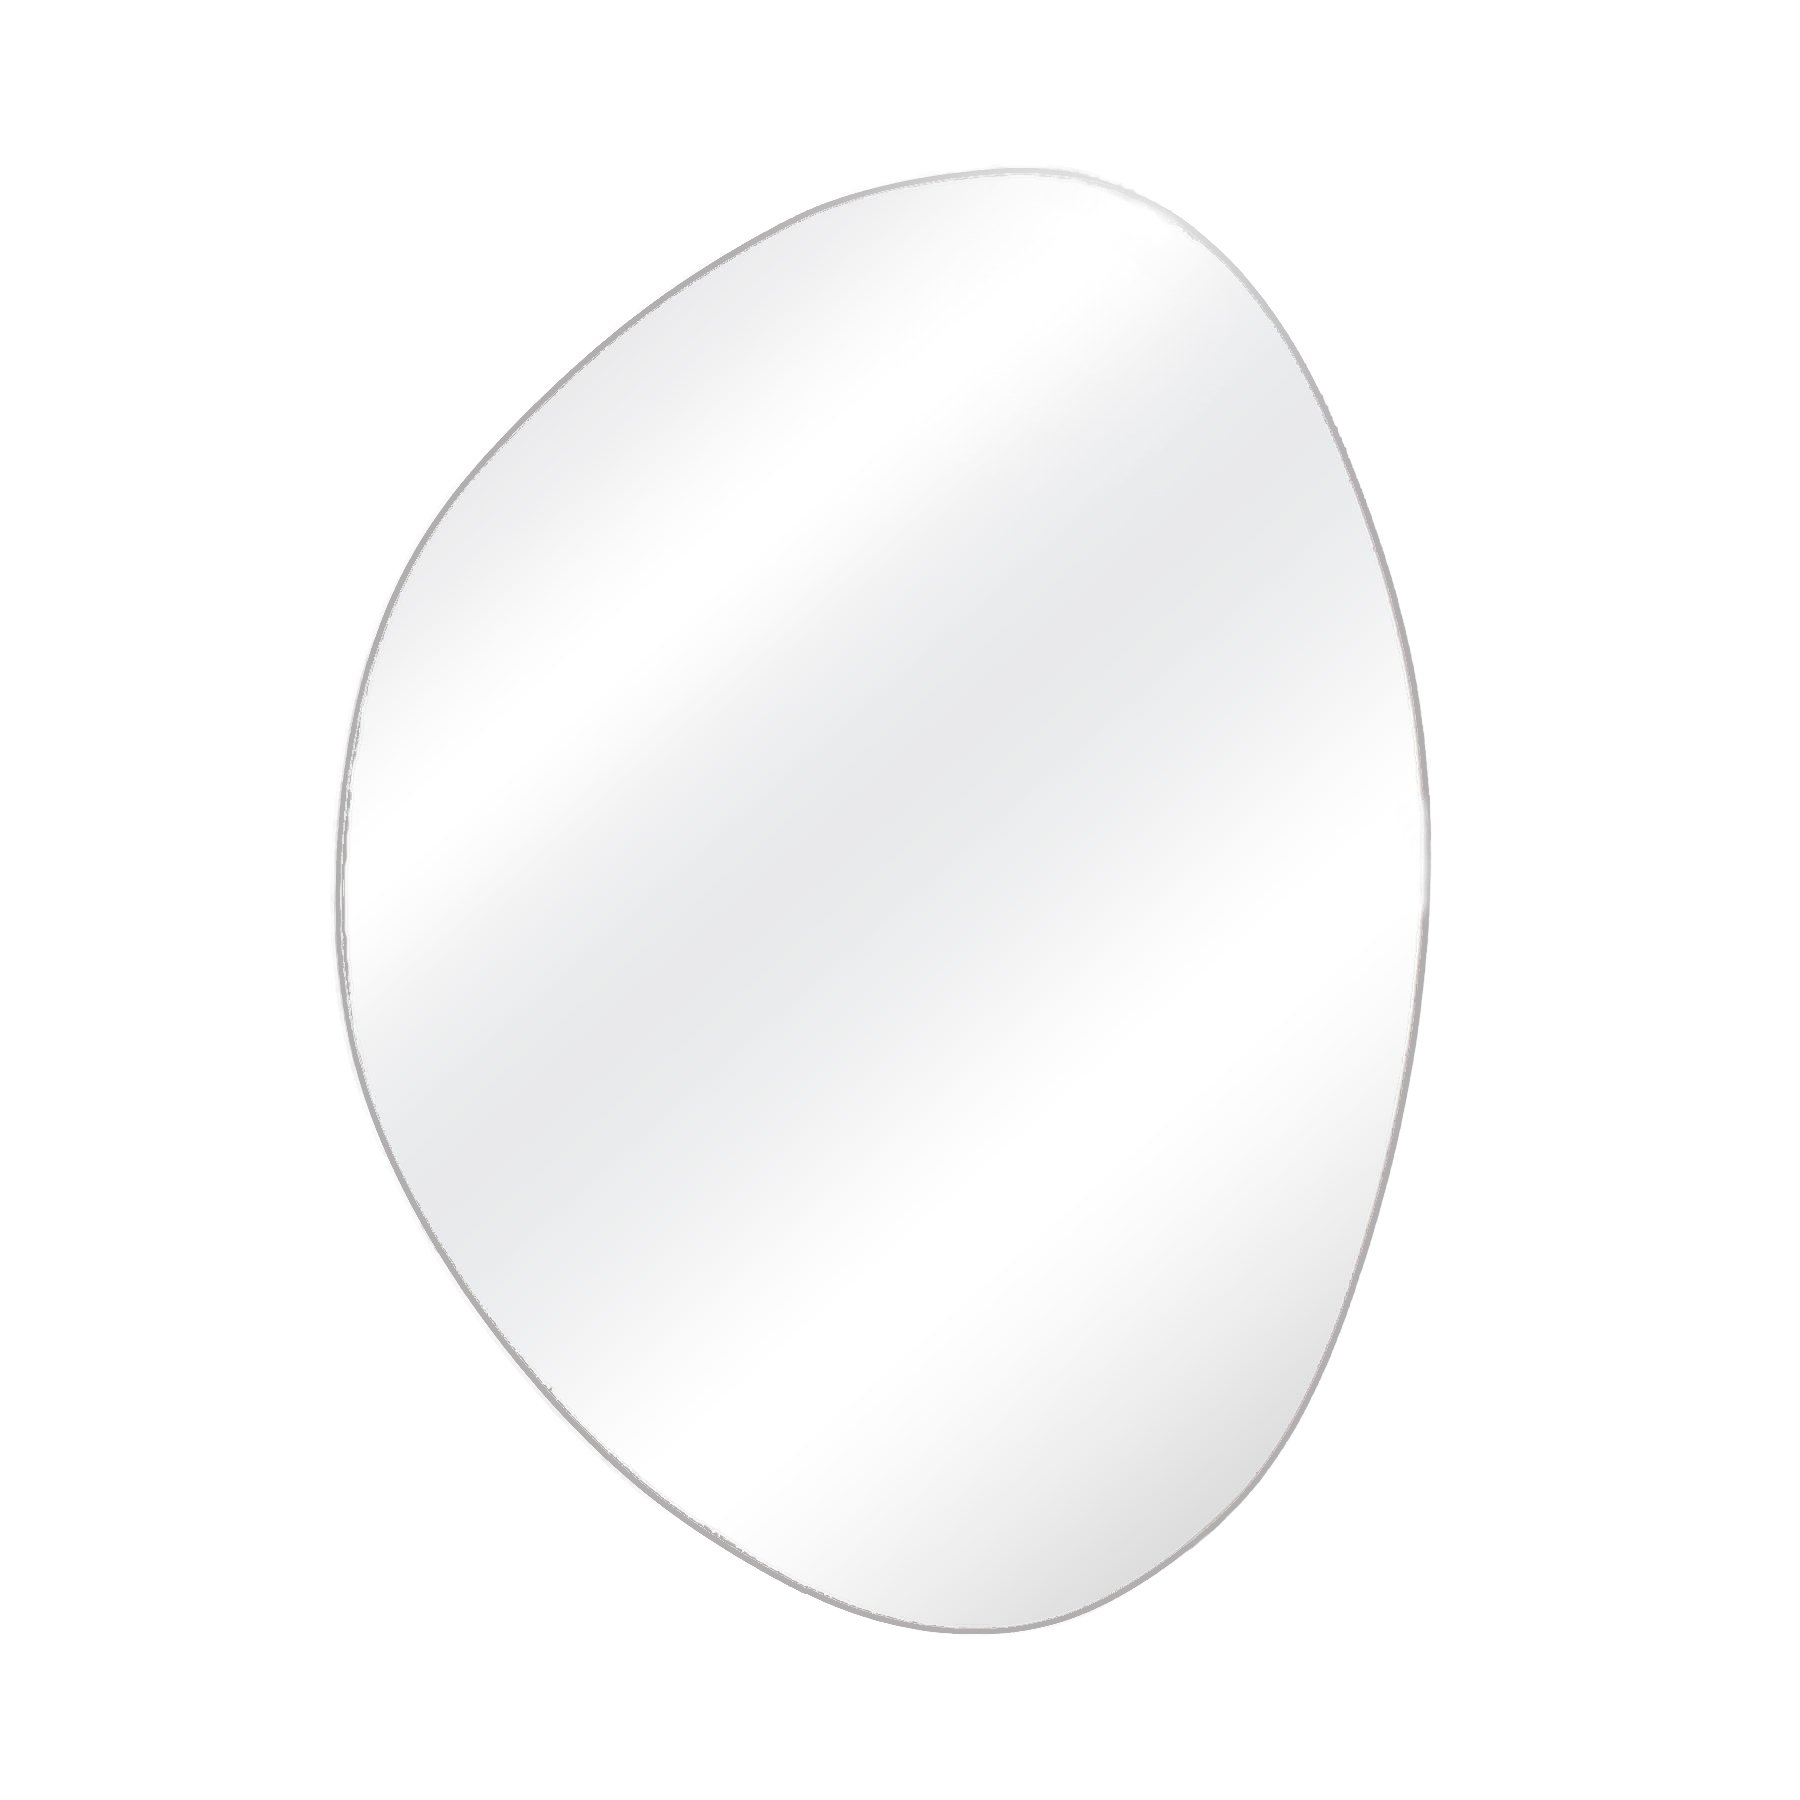 Espelho Multiuso Lapidado Fita Dupla Face 3M 66x52 cm Organico G